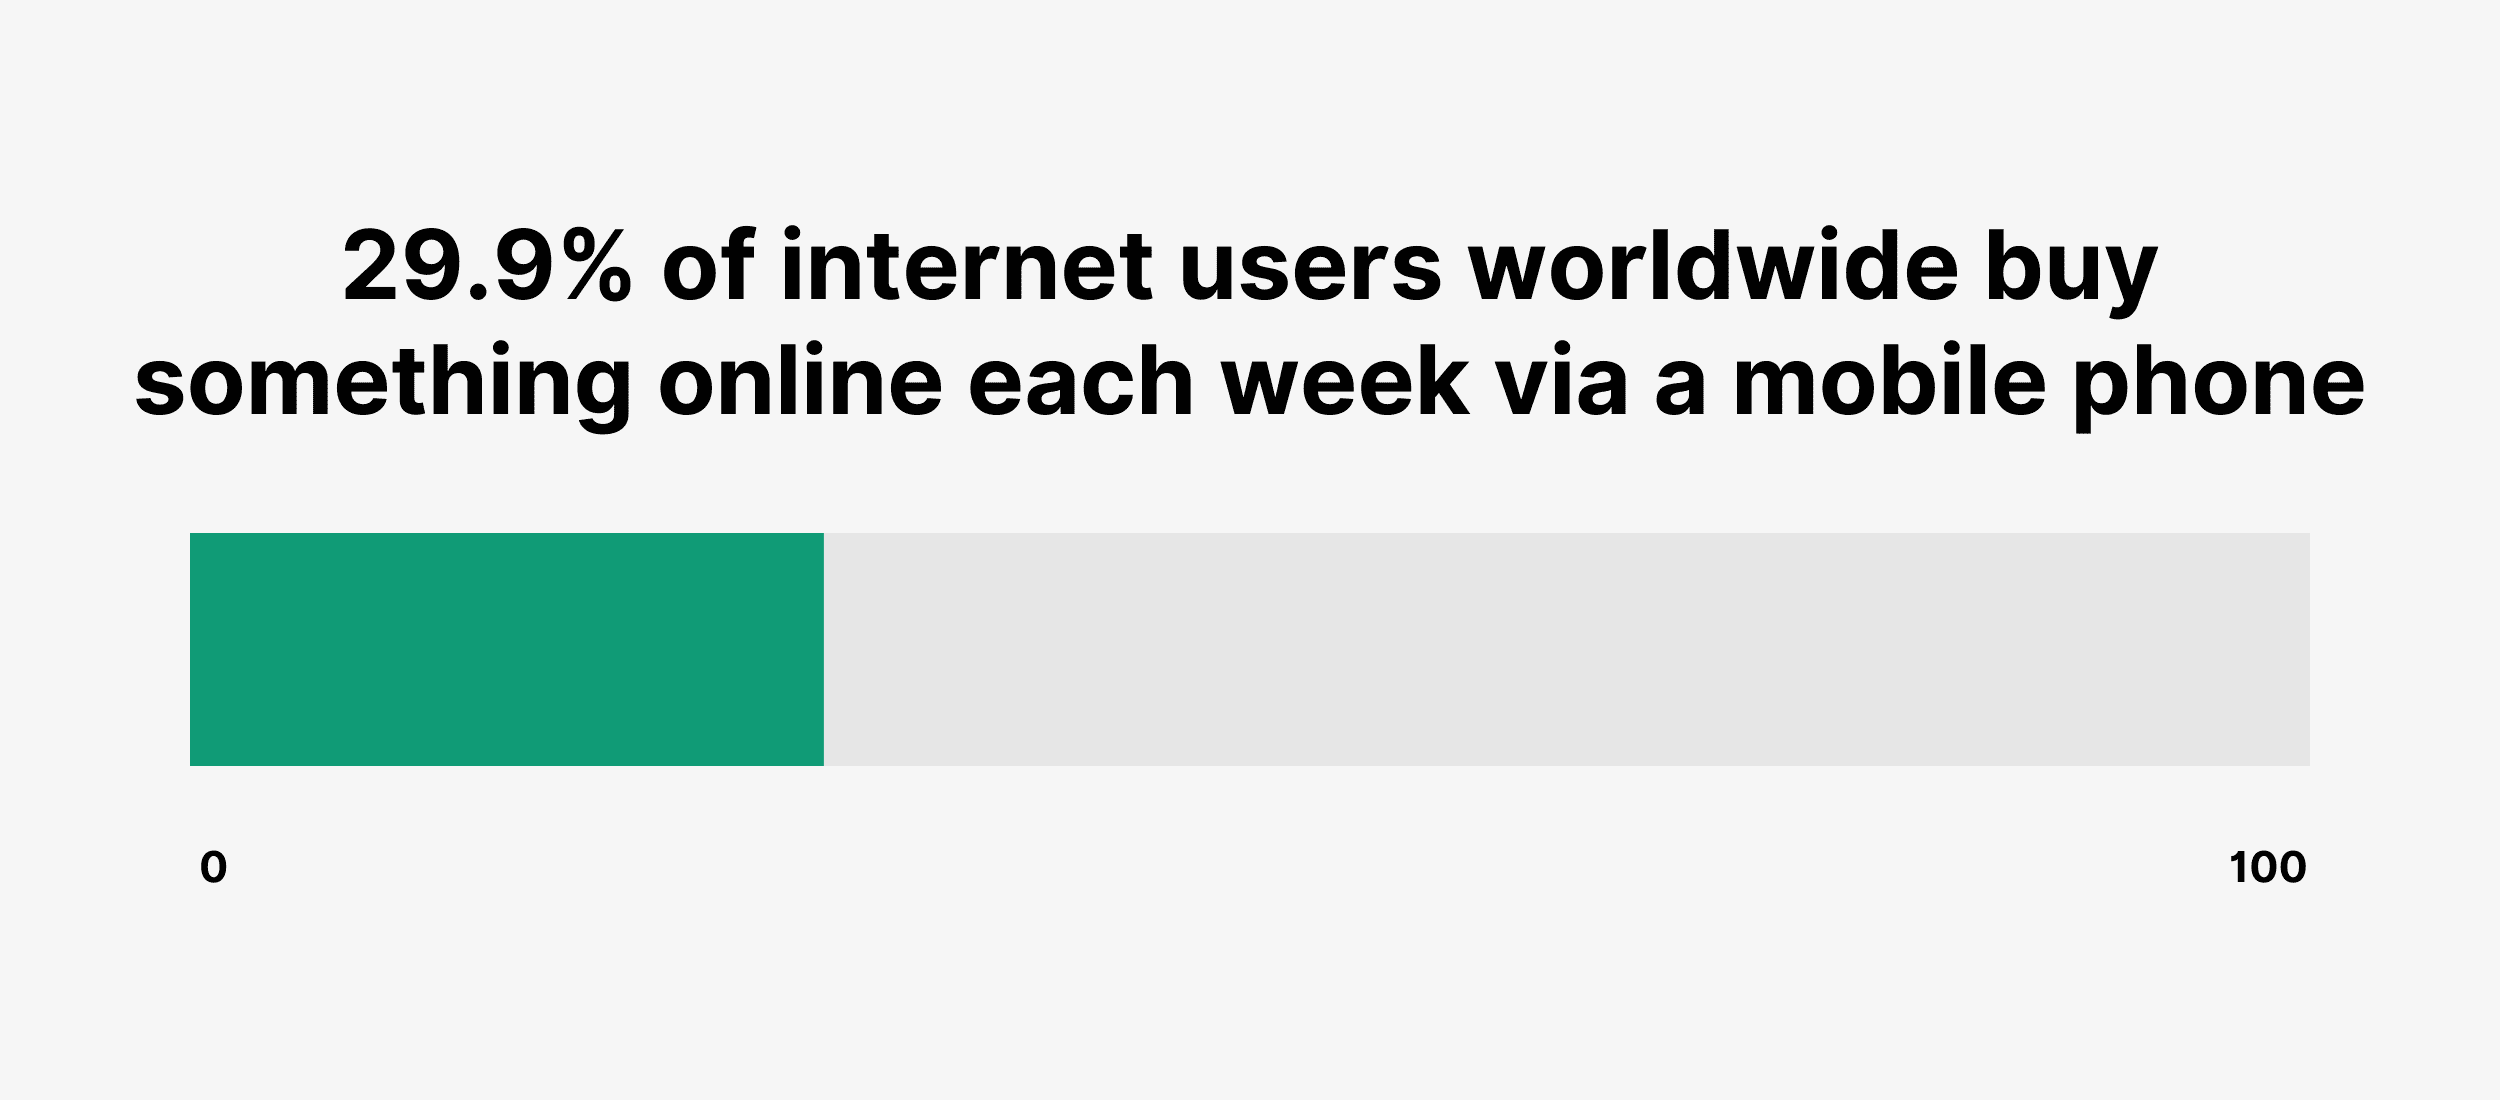 29.9% of internet users worldwide buy something online each week via a mobile phone